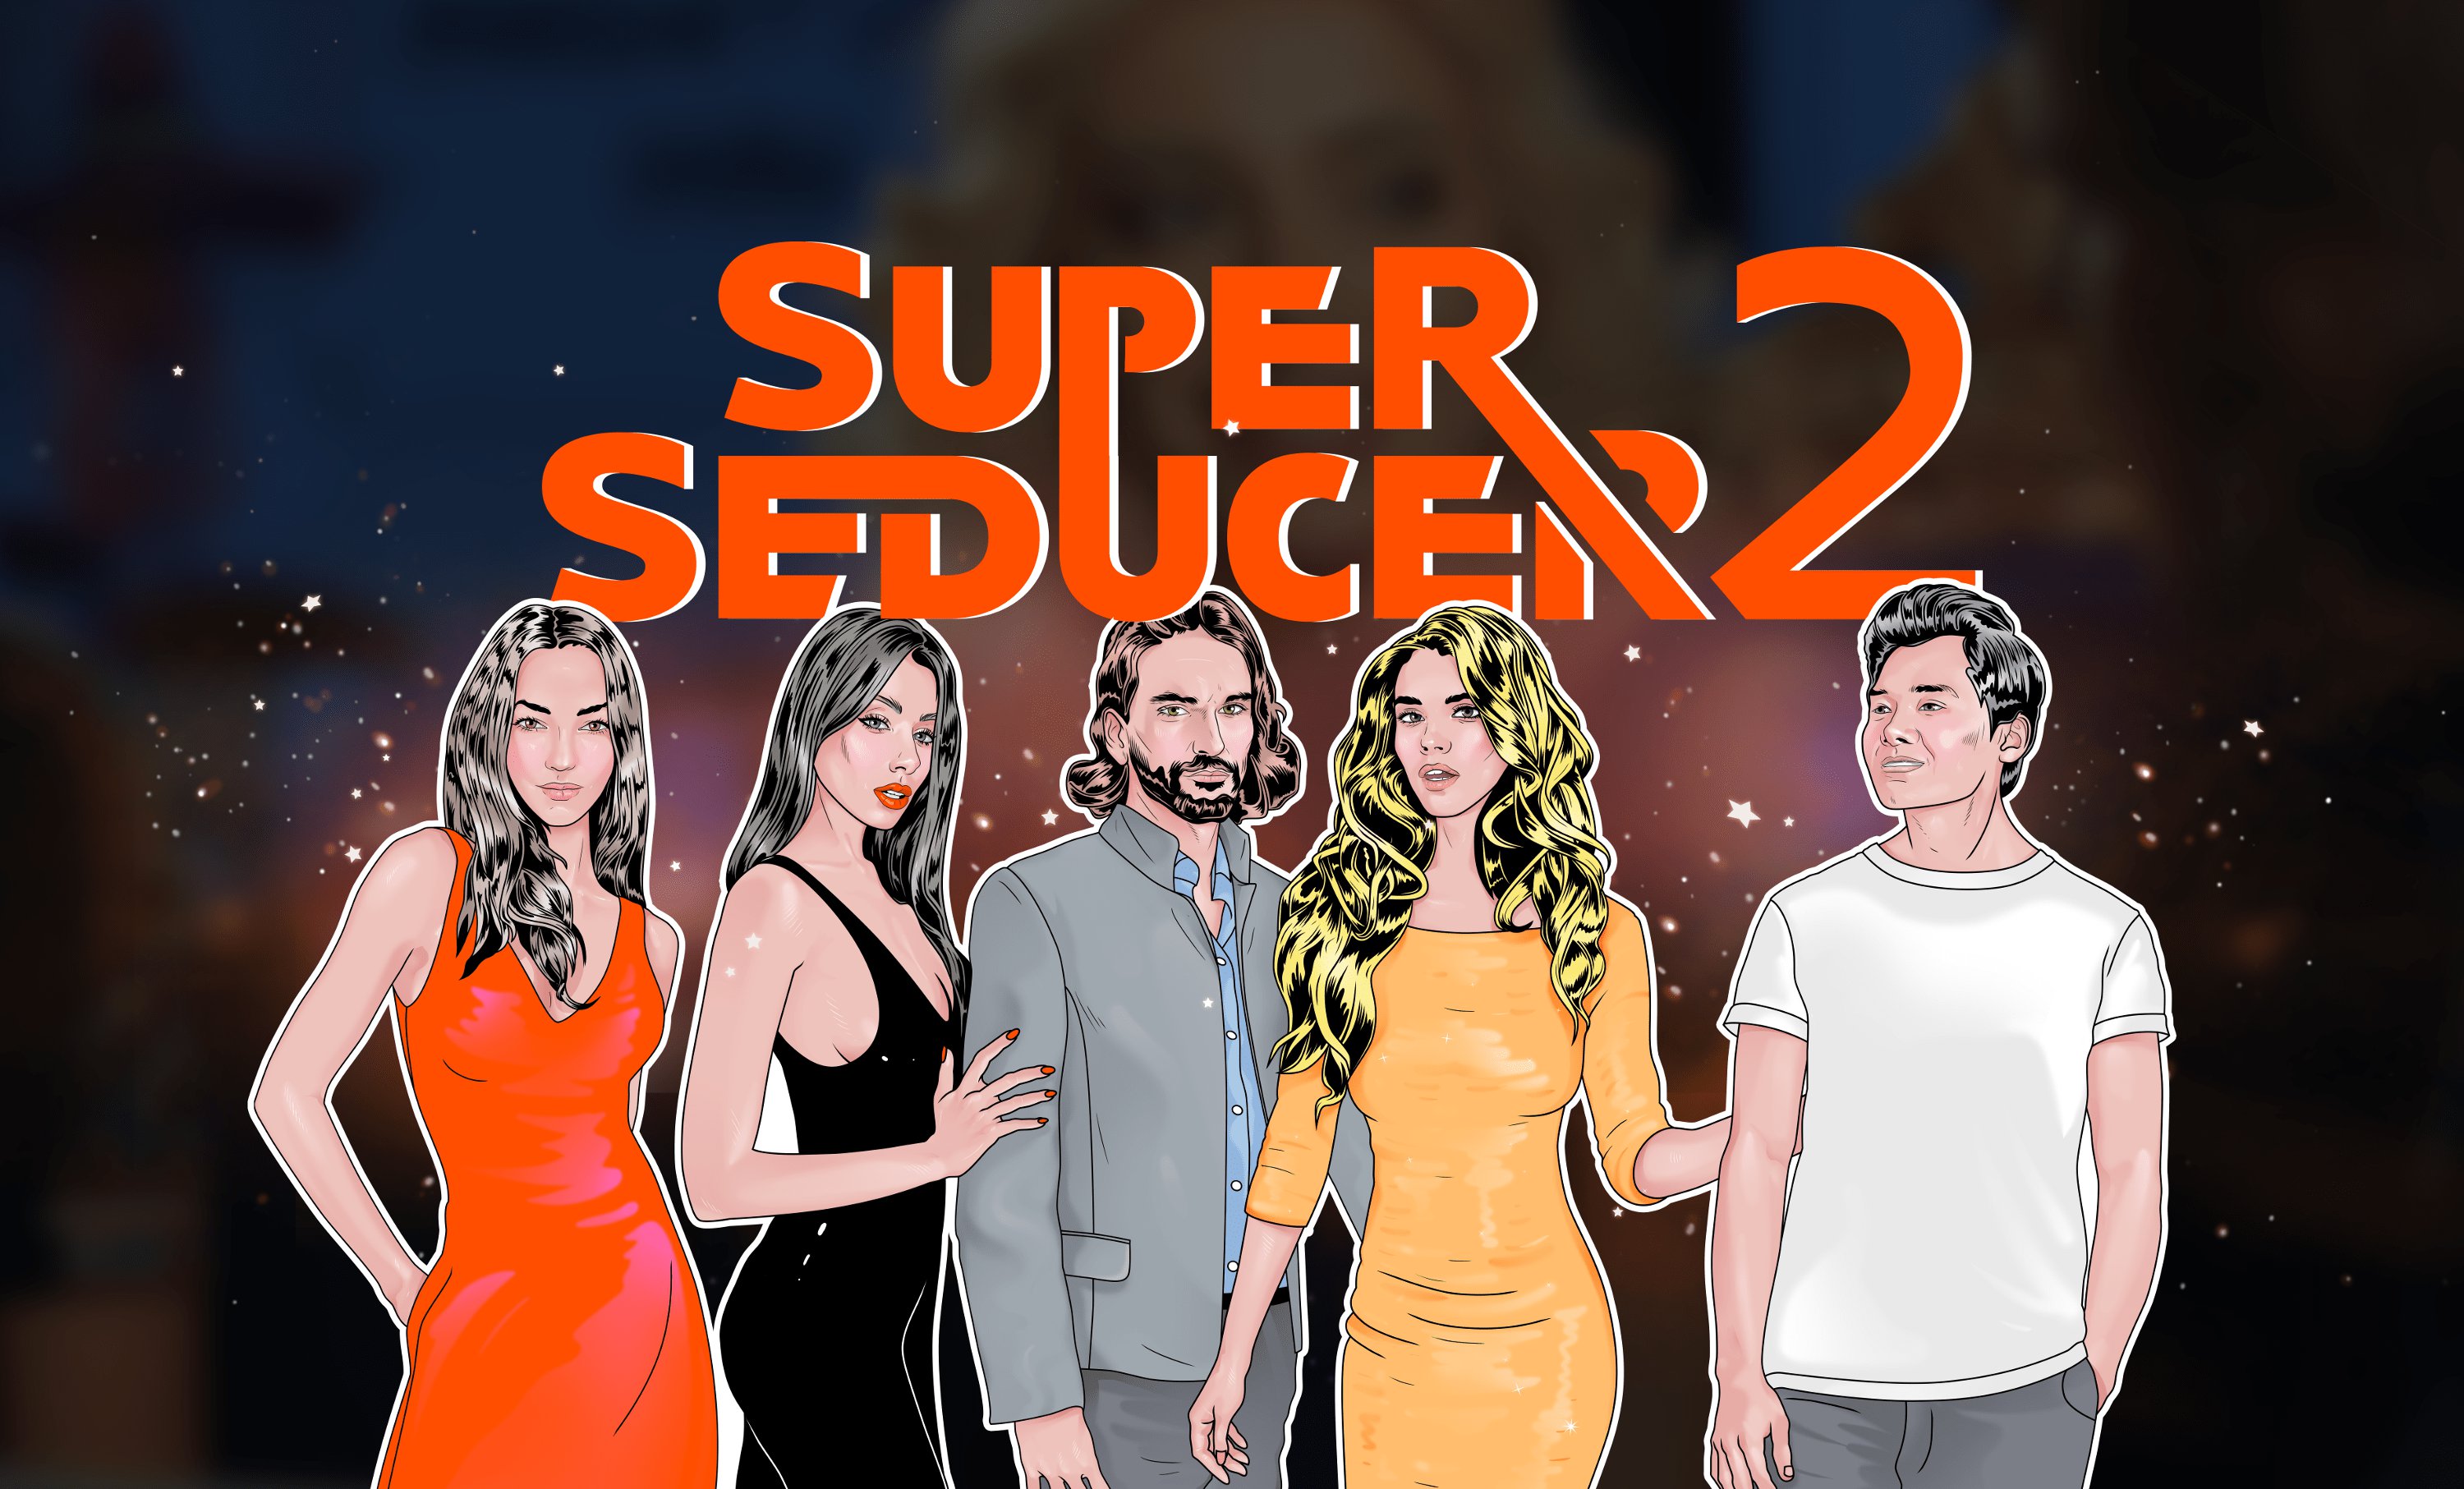 Super Seducer 2 Advanced Seduction Tactics 21